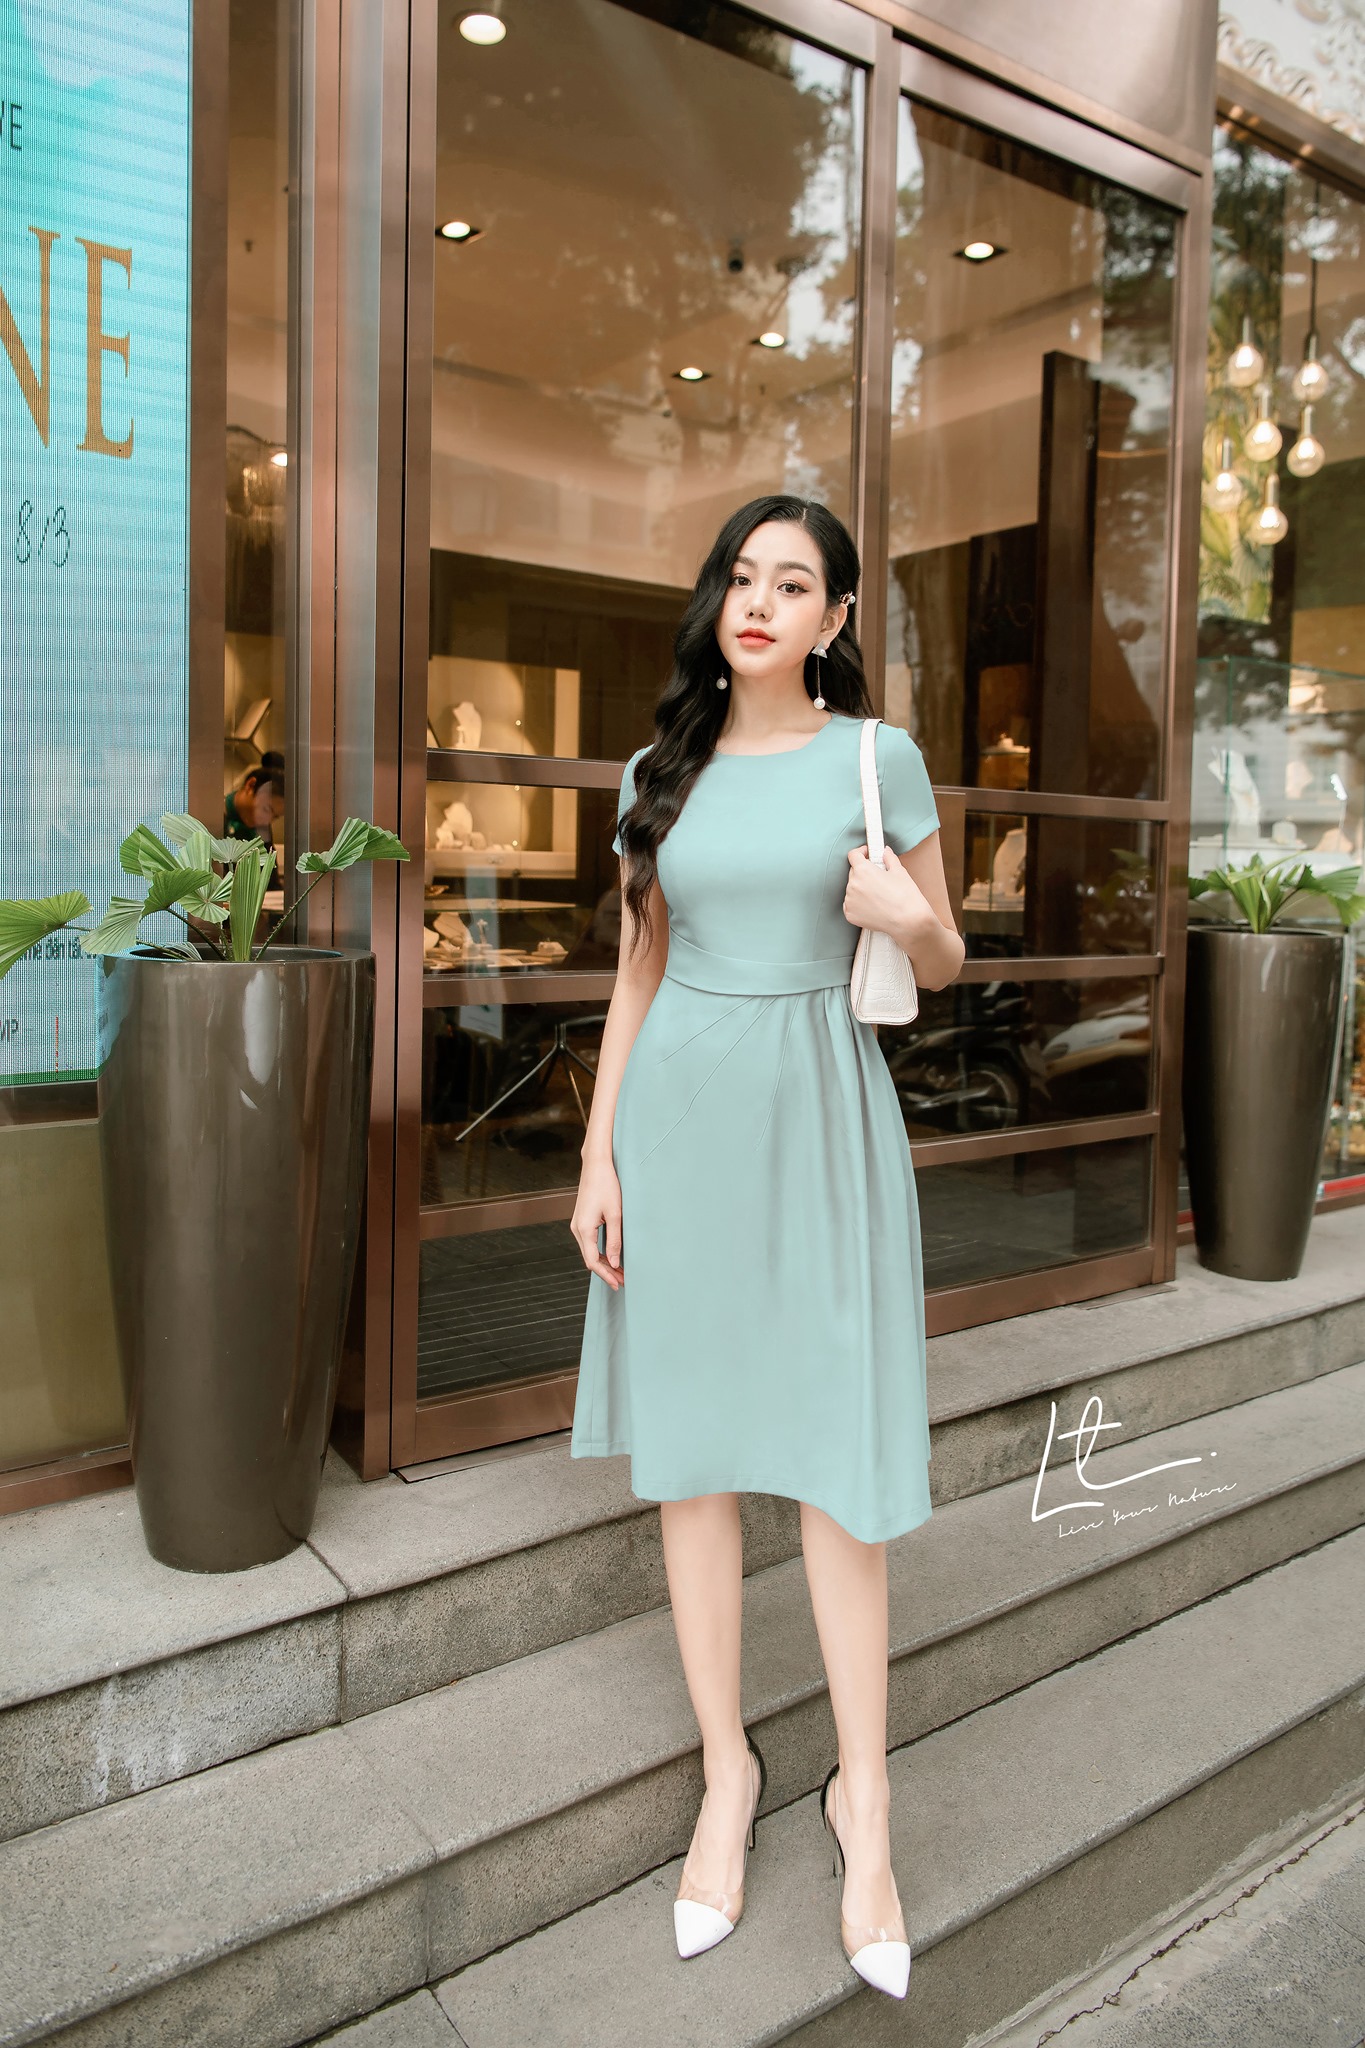 BELY  V761  Váy đầm 7 mảnh xòe silk lạnh thiết kế choàng vai  Xanh mint  Hồng pastel  Bely  Thời trang cao cấp Bely